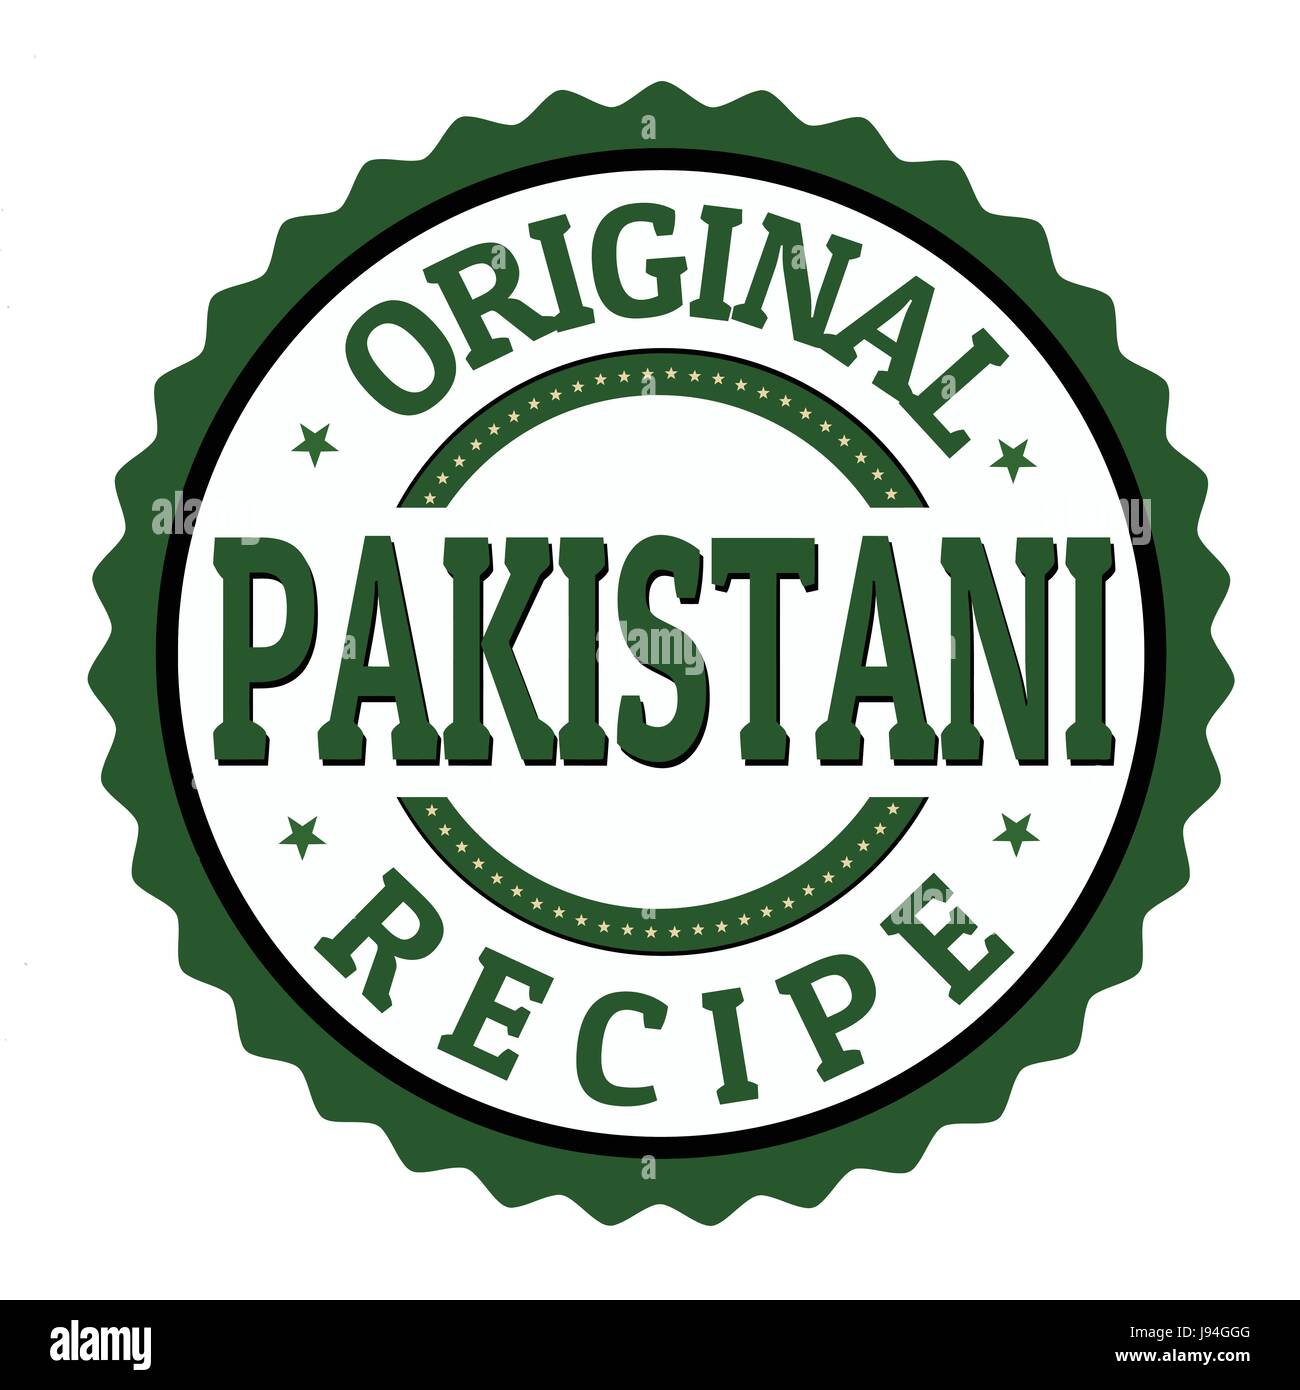 Originaletikett pakistanischen Rezept oder Stempel auf weißem Hintergrund, Vektor-illustration Stock Vektor